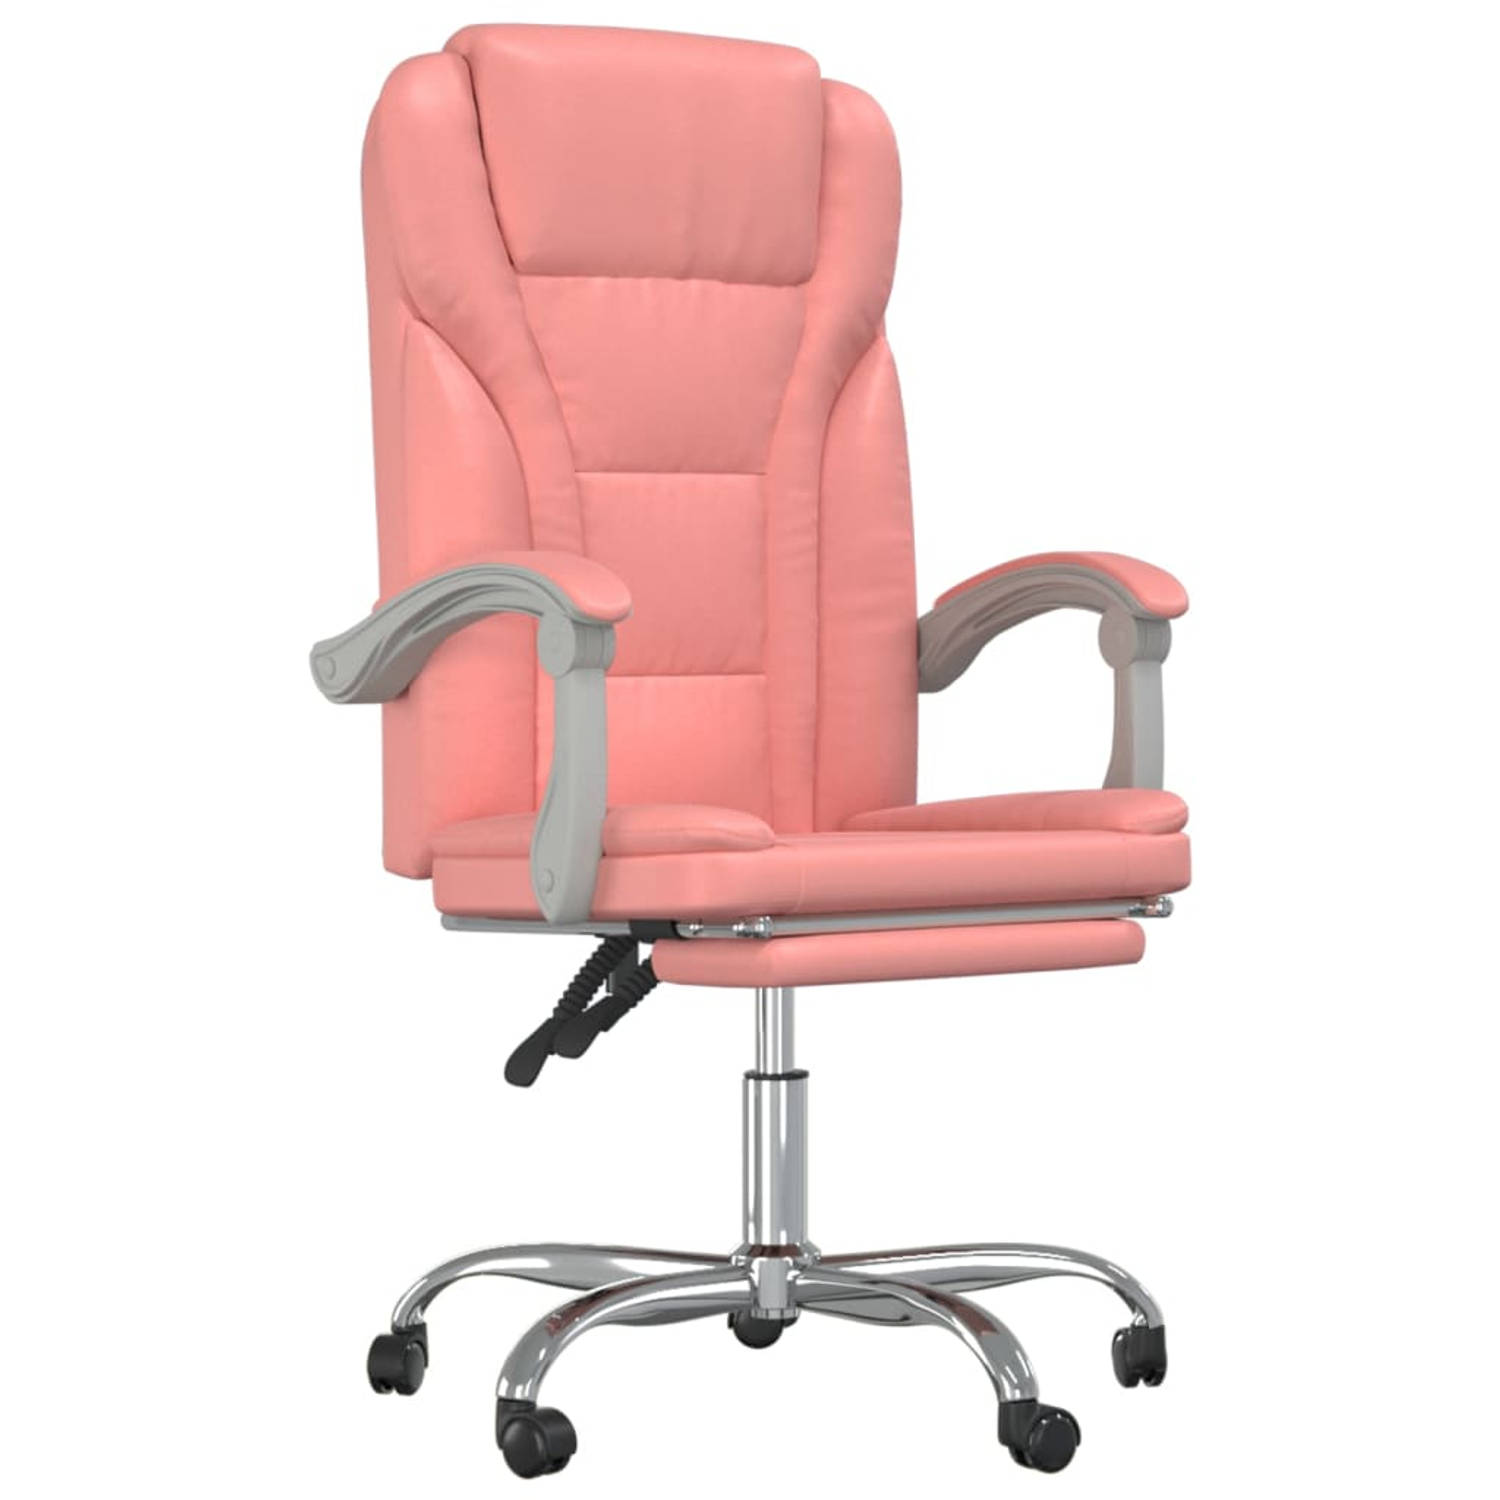 The Living Store Verstelbare Bureaustoel - Roze Kunstleer - Minimalistisch ontwerp - Duurzaam materiaal - Verstelbare rugleuning en voetensteun - Handig draaibaar ontwerp - Stevig